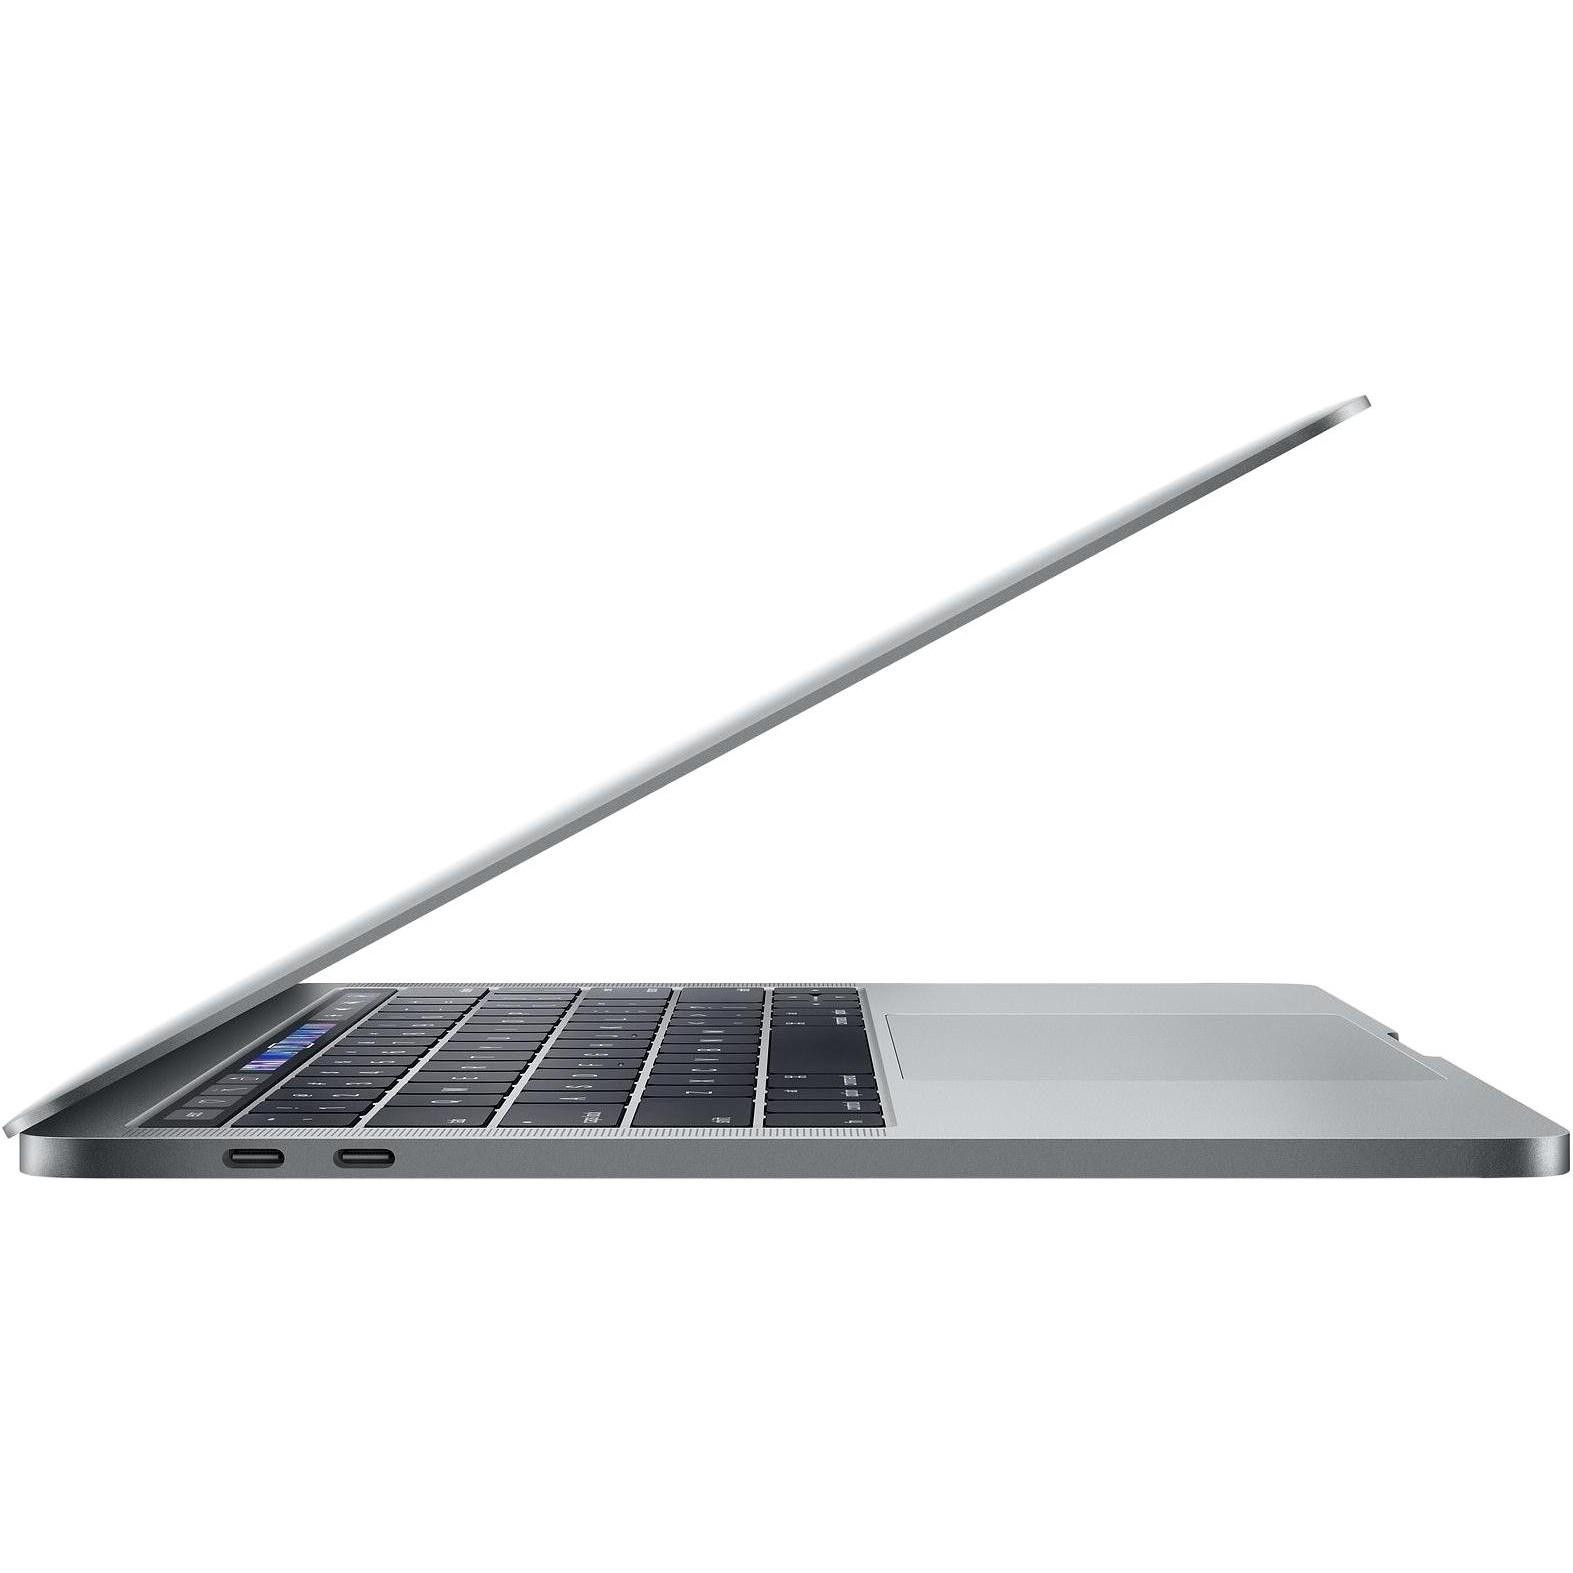 Apple MacBook Pro 13" Space Gray 2019 (Z0WQ000QP, Z0WR000CZ, Z0WQ000ES)